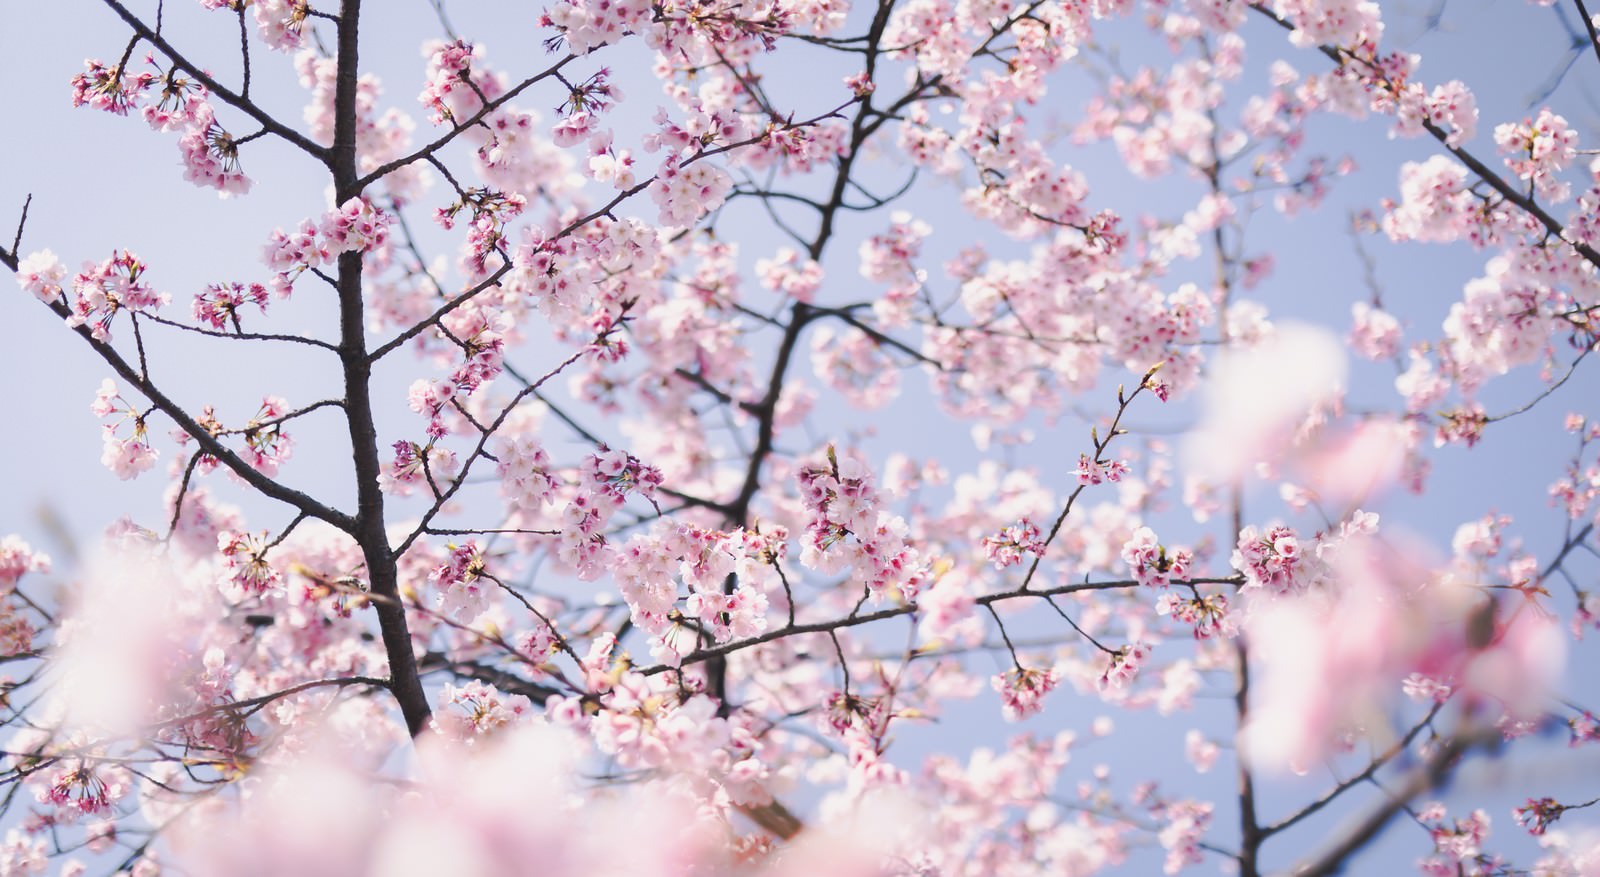 「ほんわか桜の花」の写真